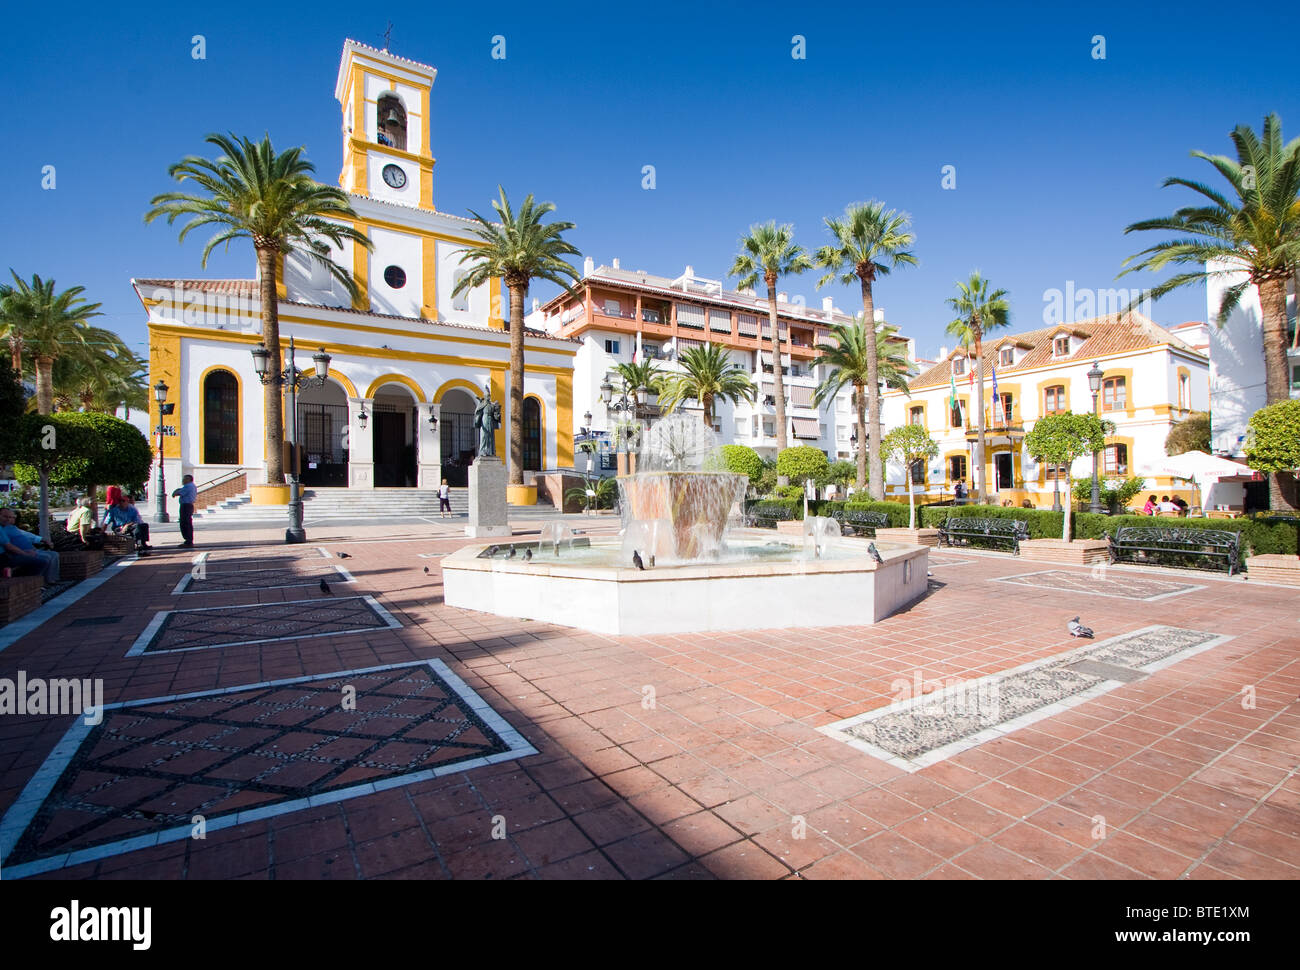 Plaza de Iglesia (Church square) in the town of San Pedro de Alcantara, Andalucia, Spain Stock Photo